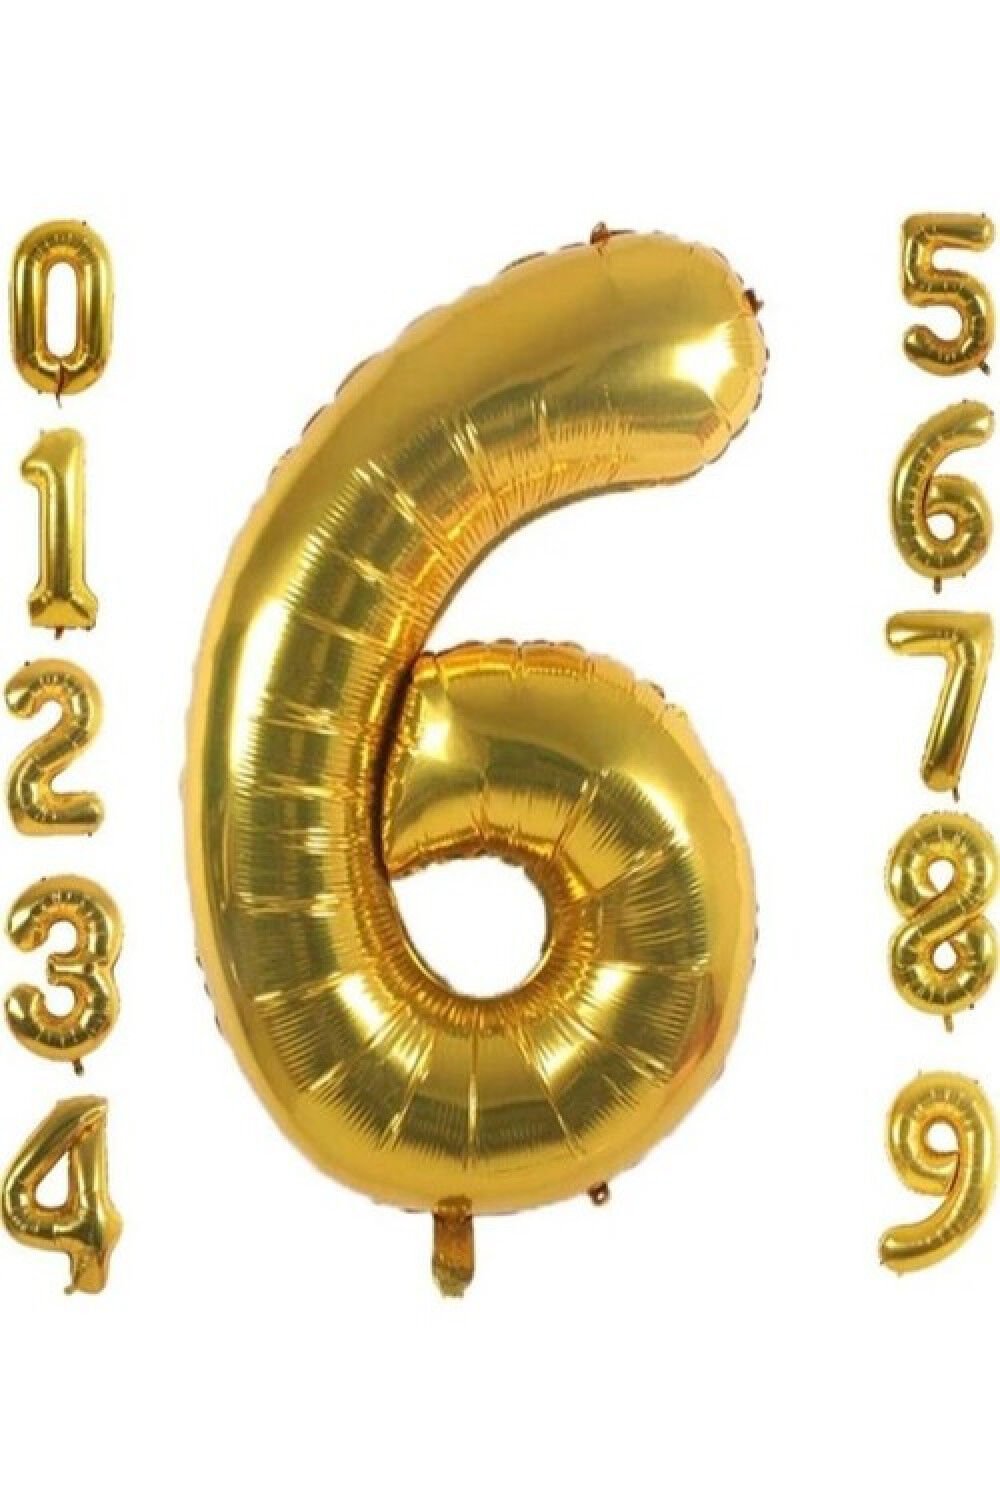 6 Yaş Doğum Günü Parti Kutlama Rakam Folyo Balon Altın Renk 36 Cm 16 Inç